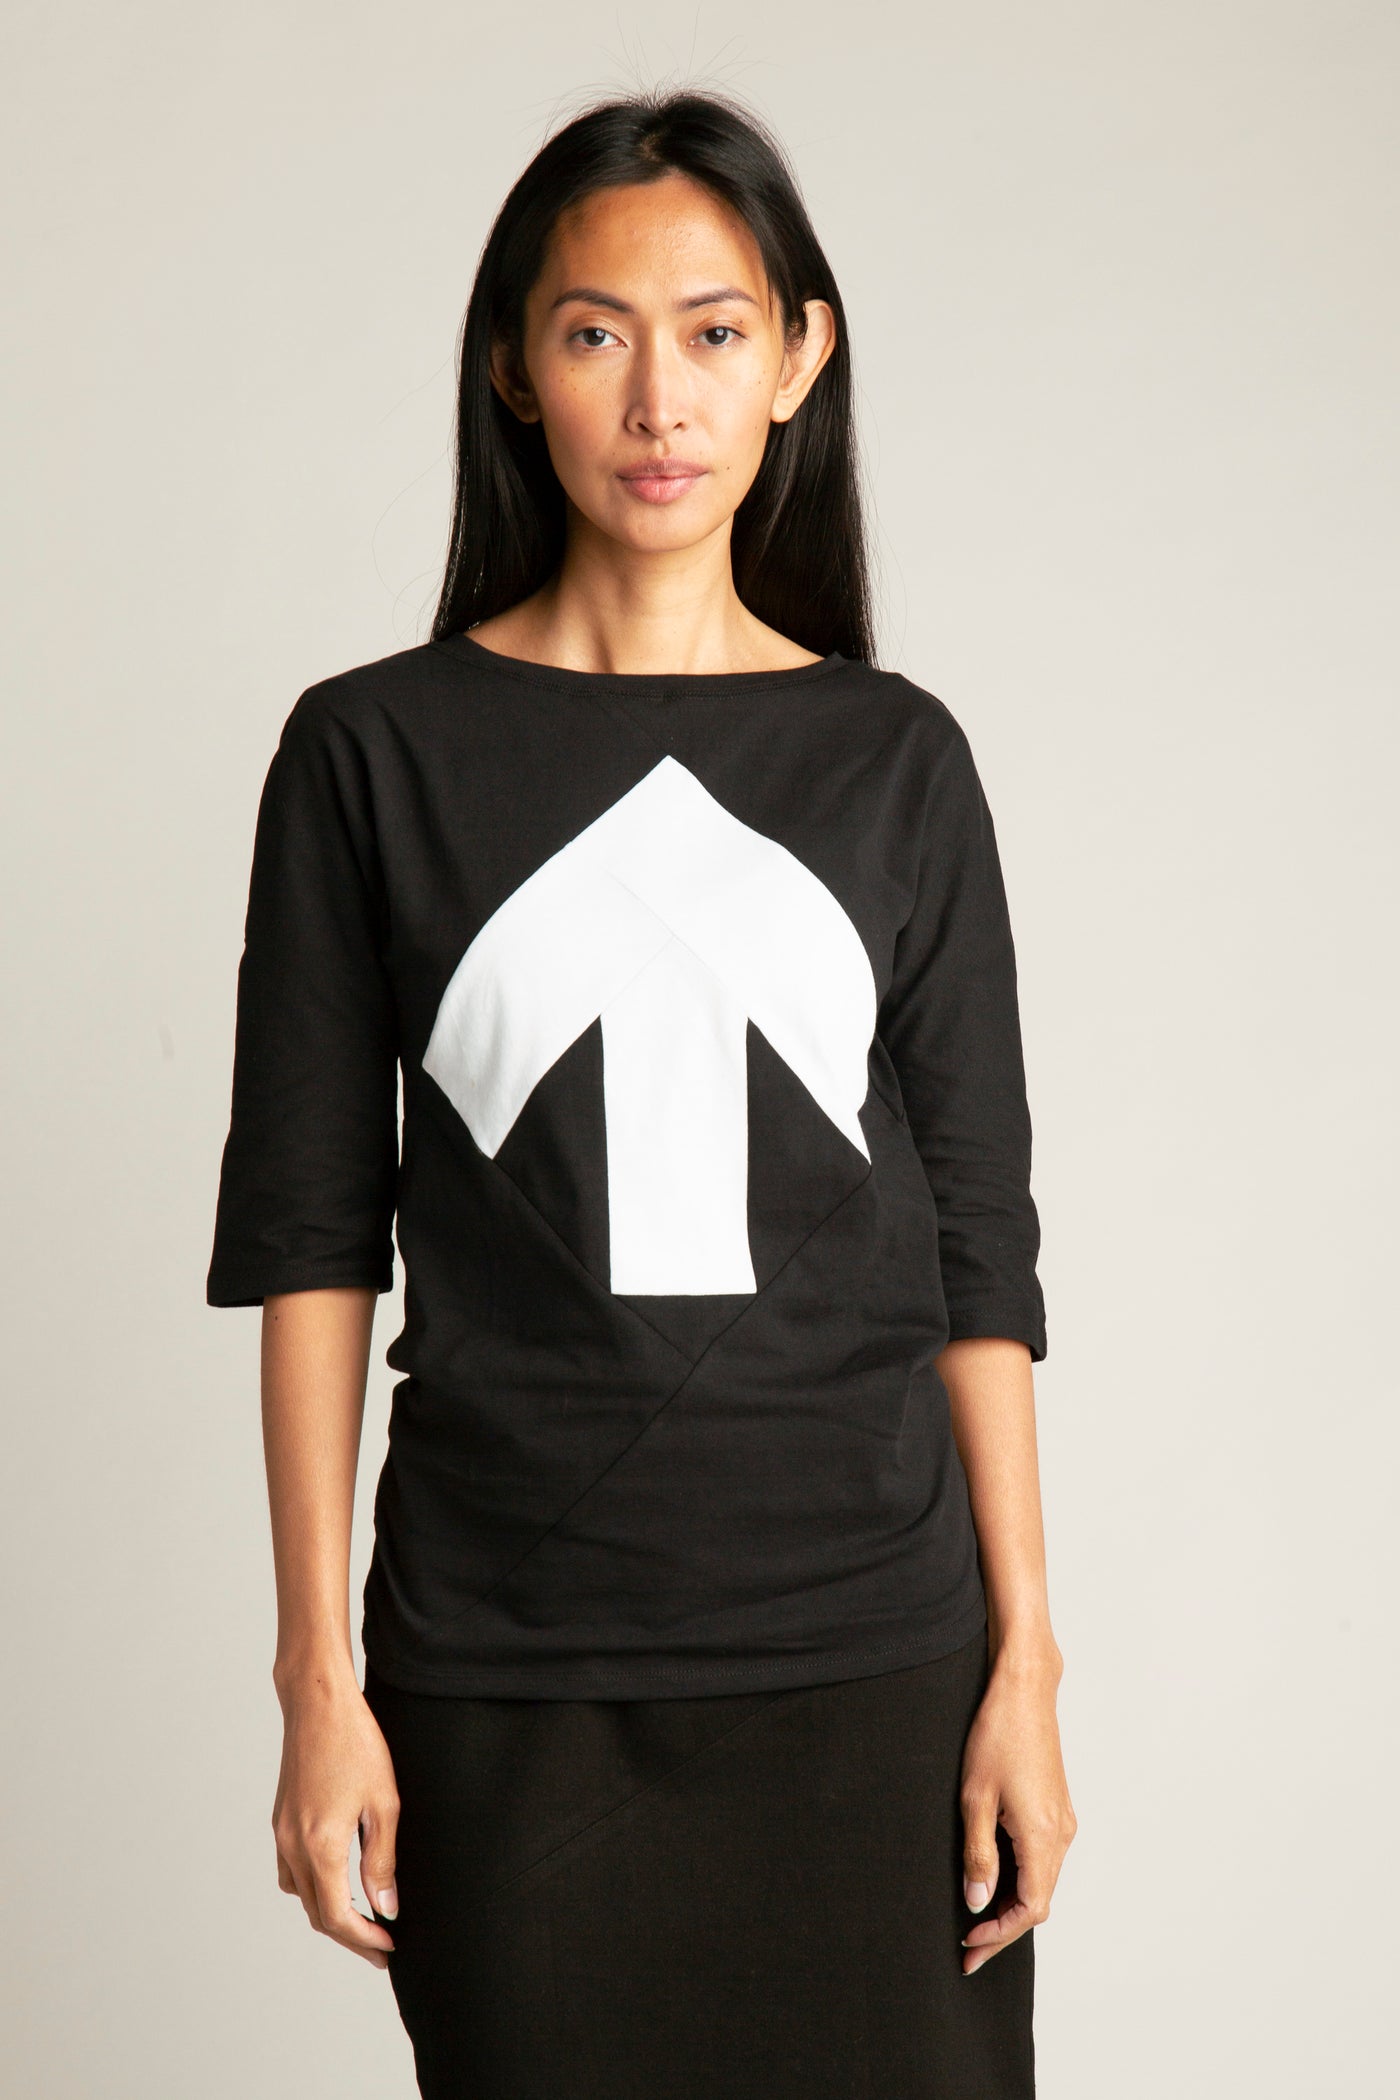 Up-shirt for women, 3/4 sleeves | Black, white